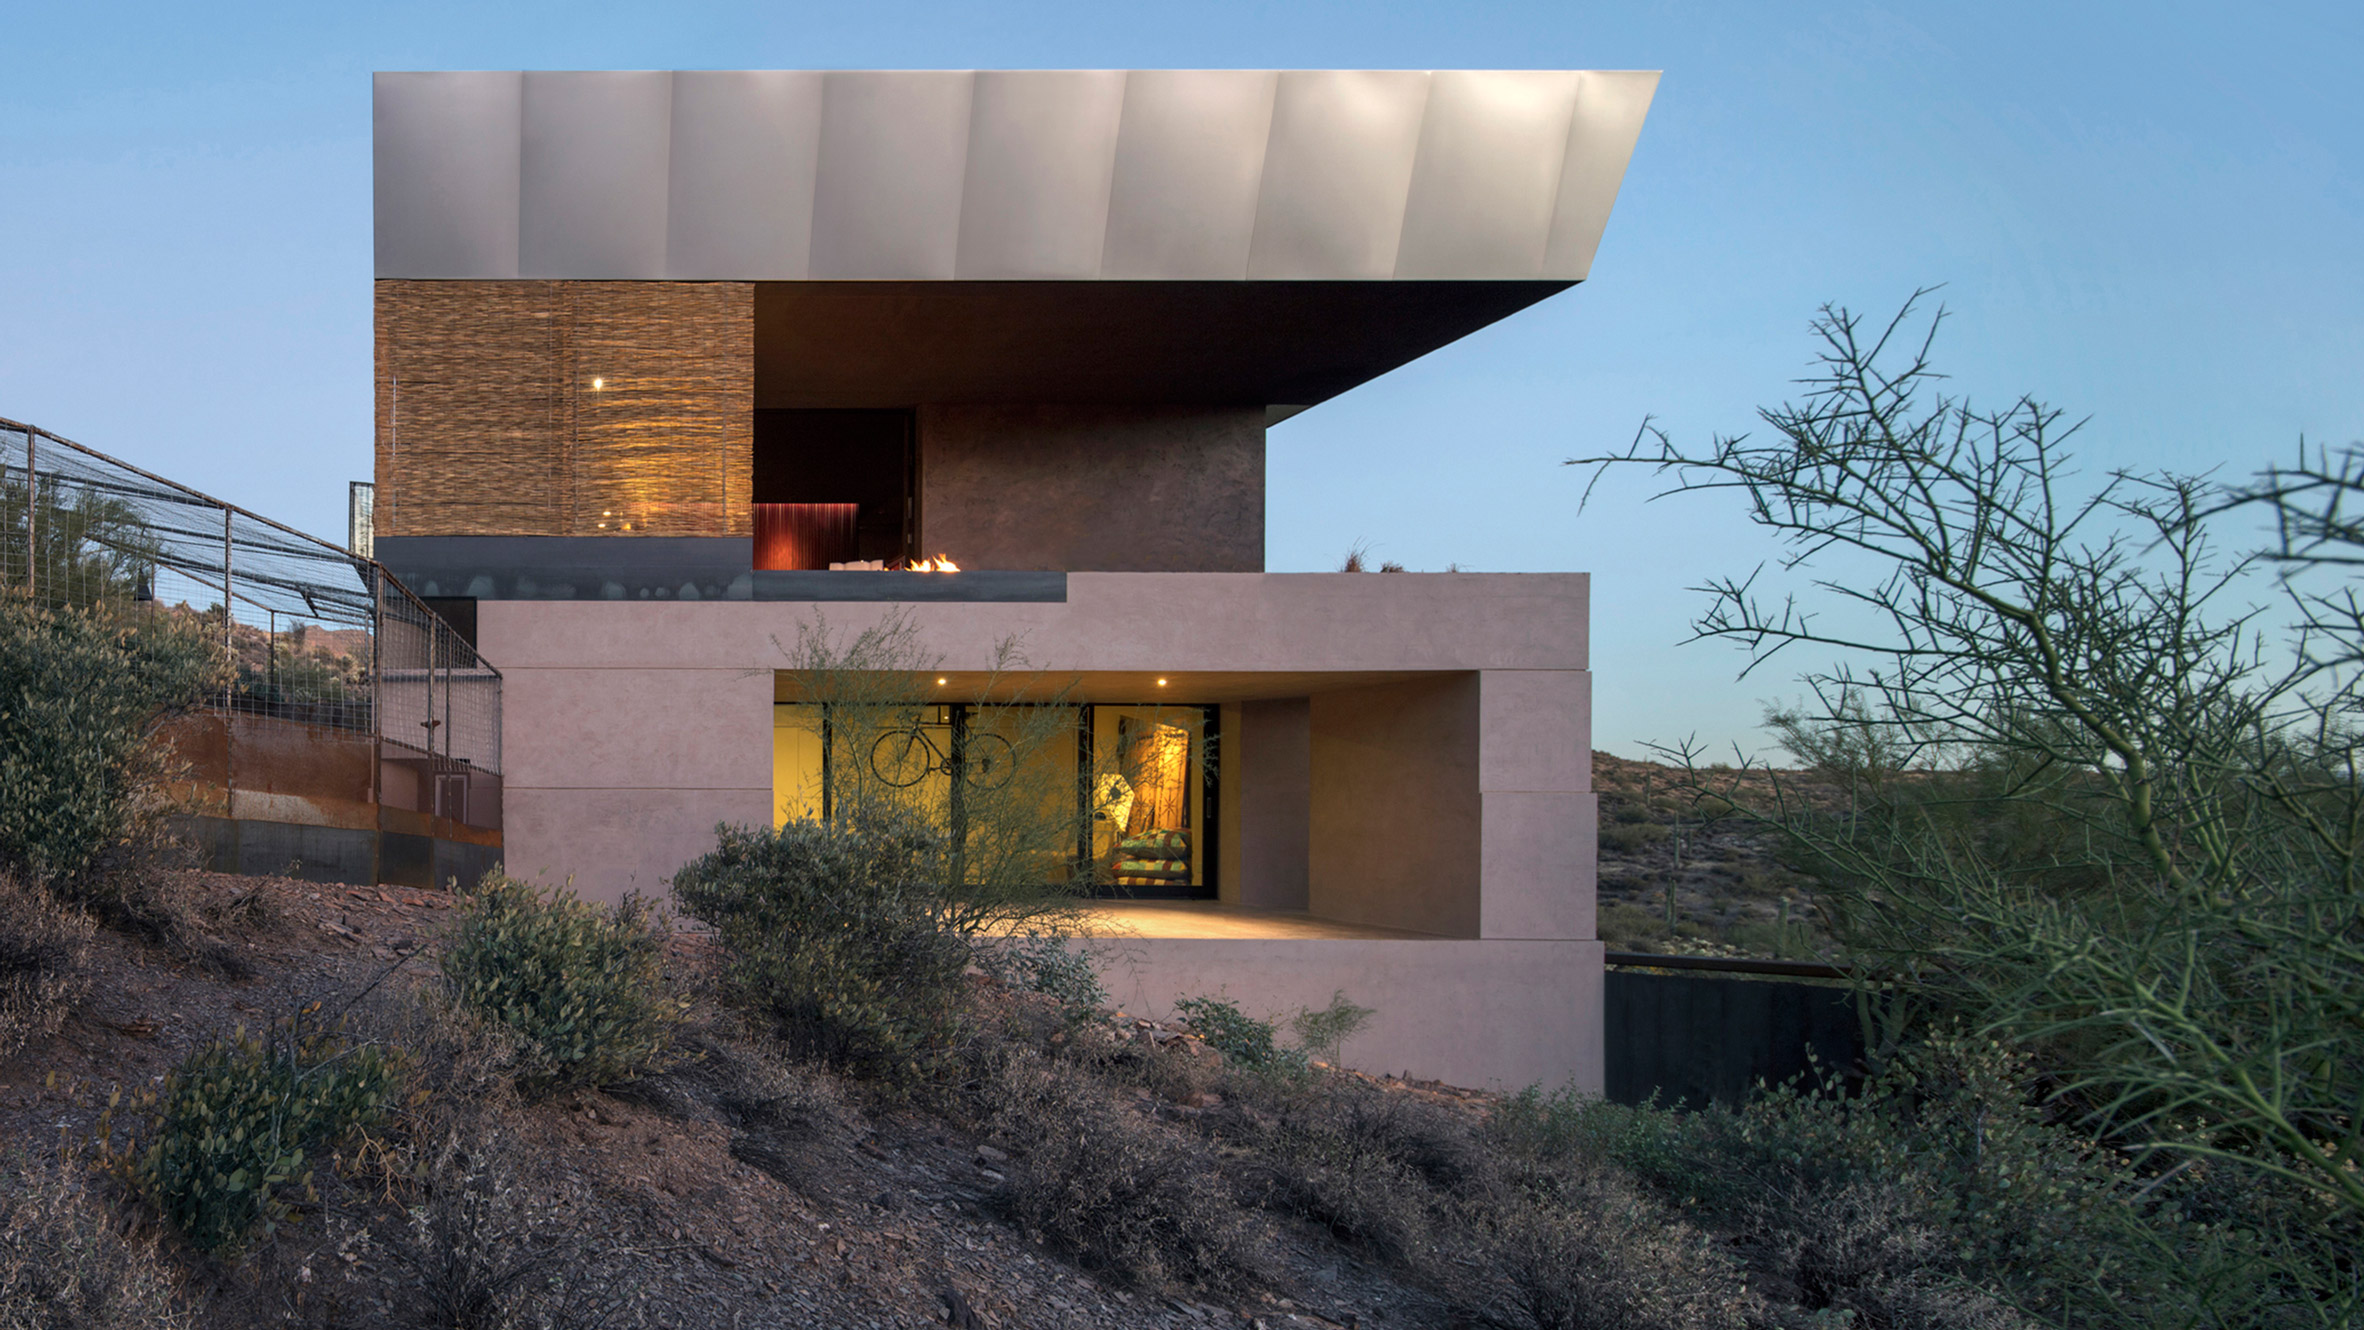 Wendell Burnette places Hidden Valley Desert House among forest of cacti